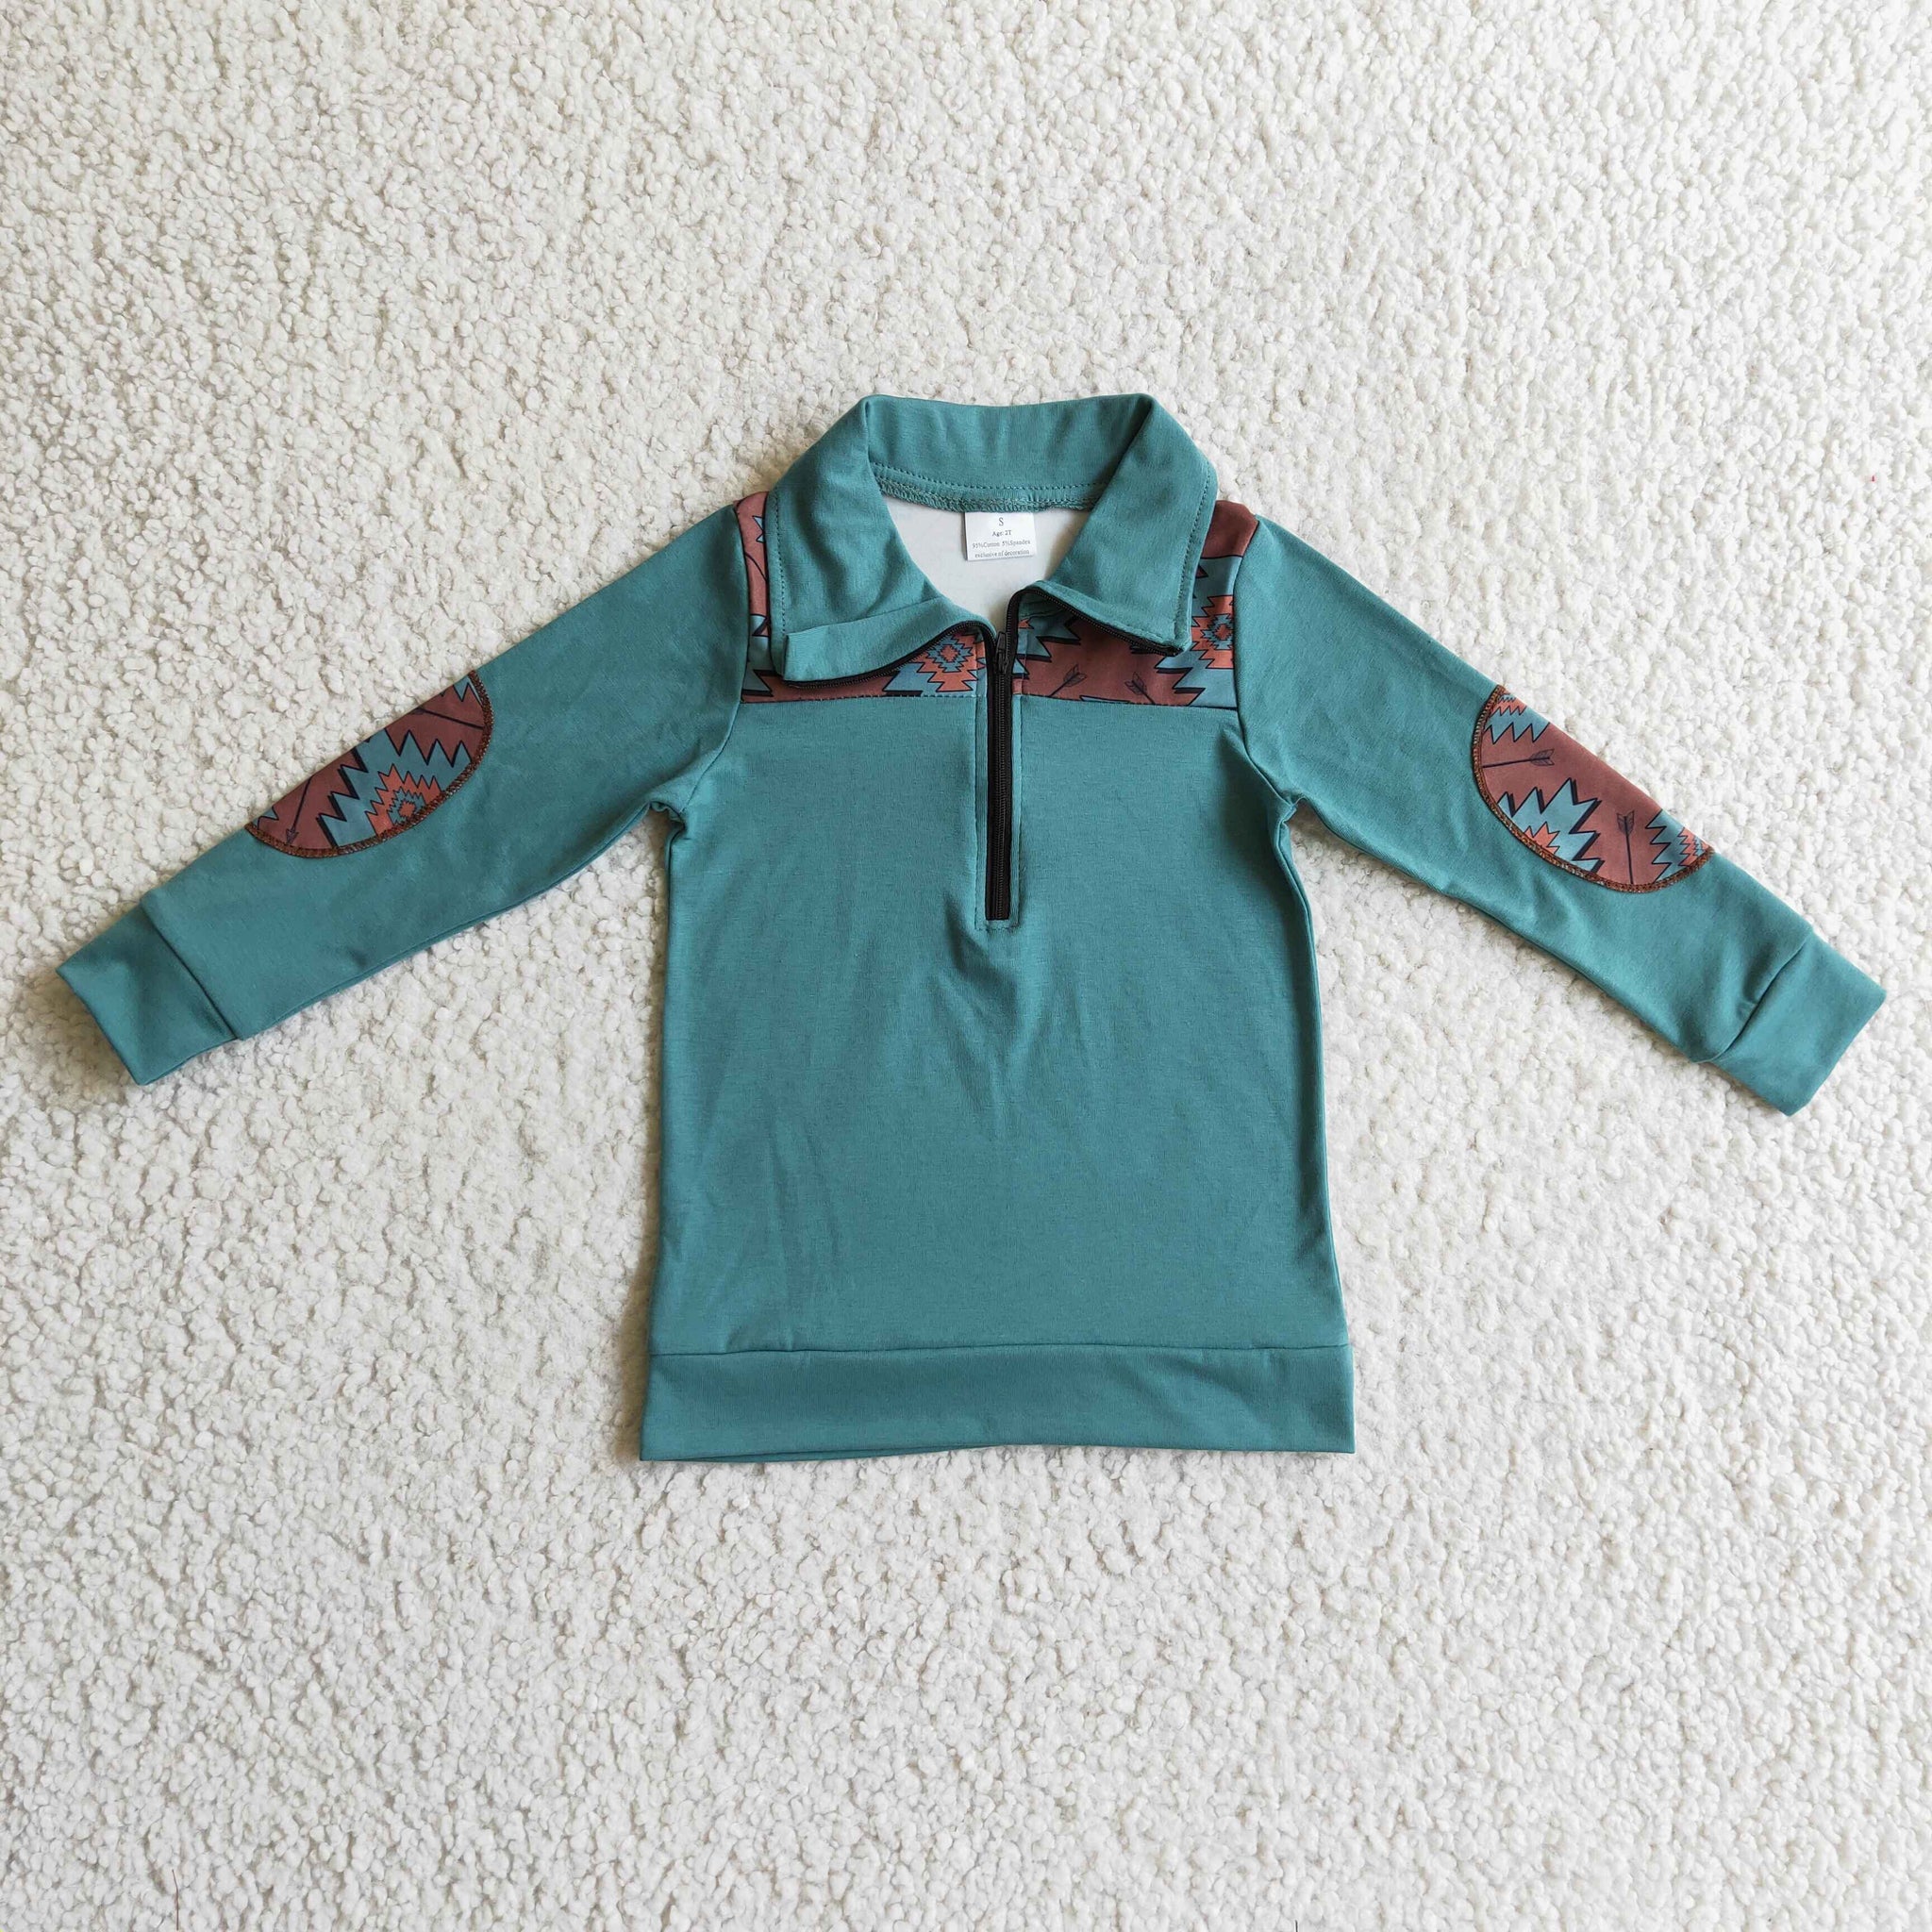 BT0093 baby boy clothes green zipper shirt